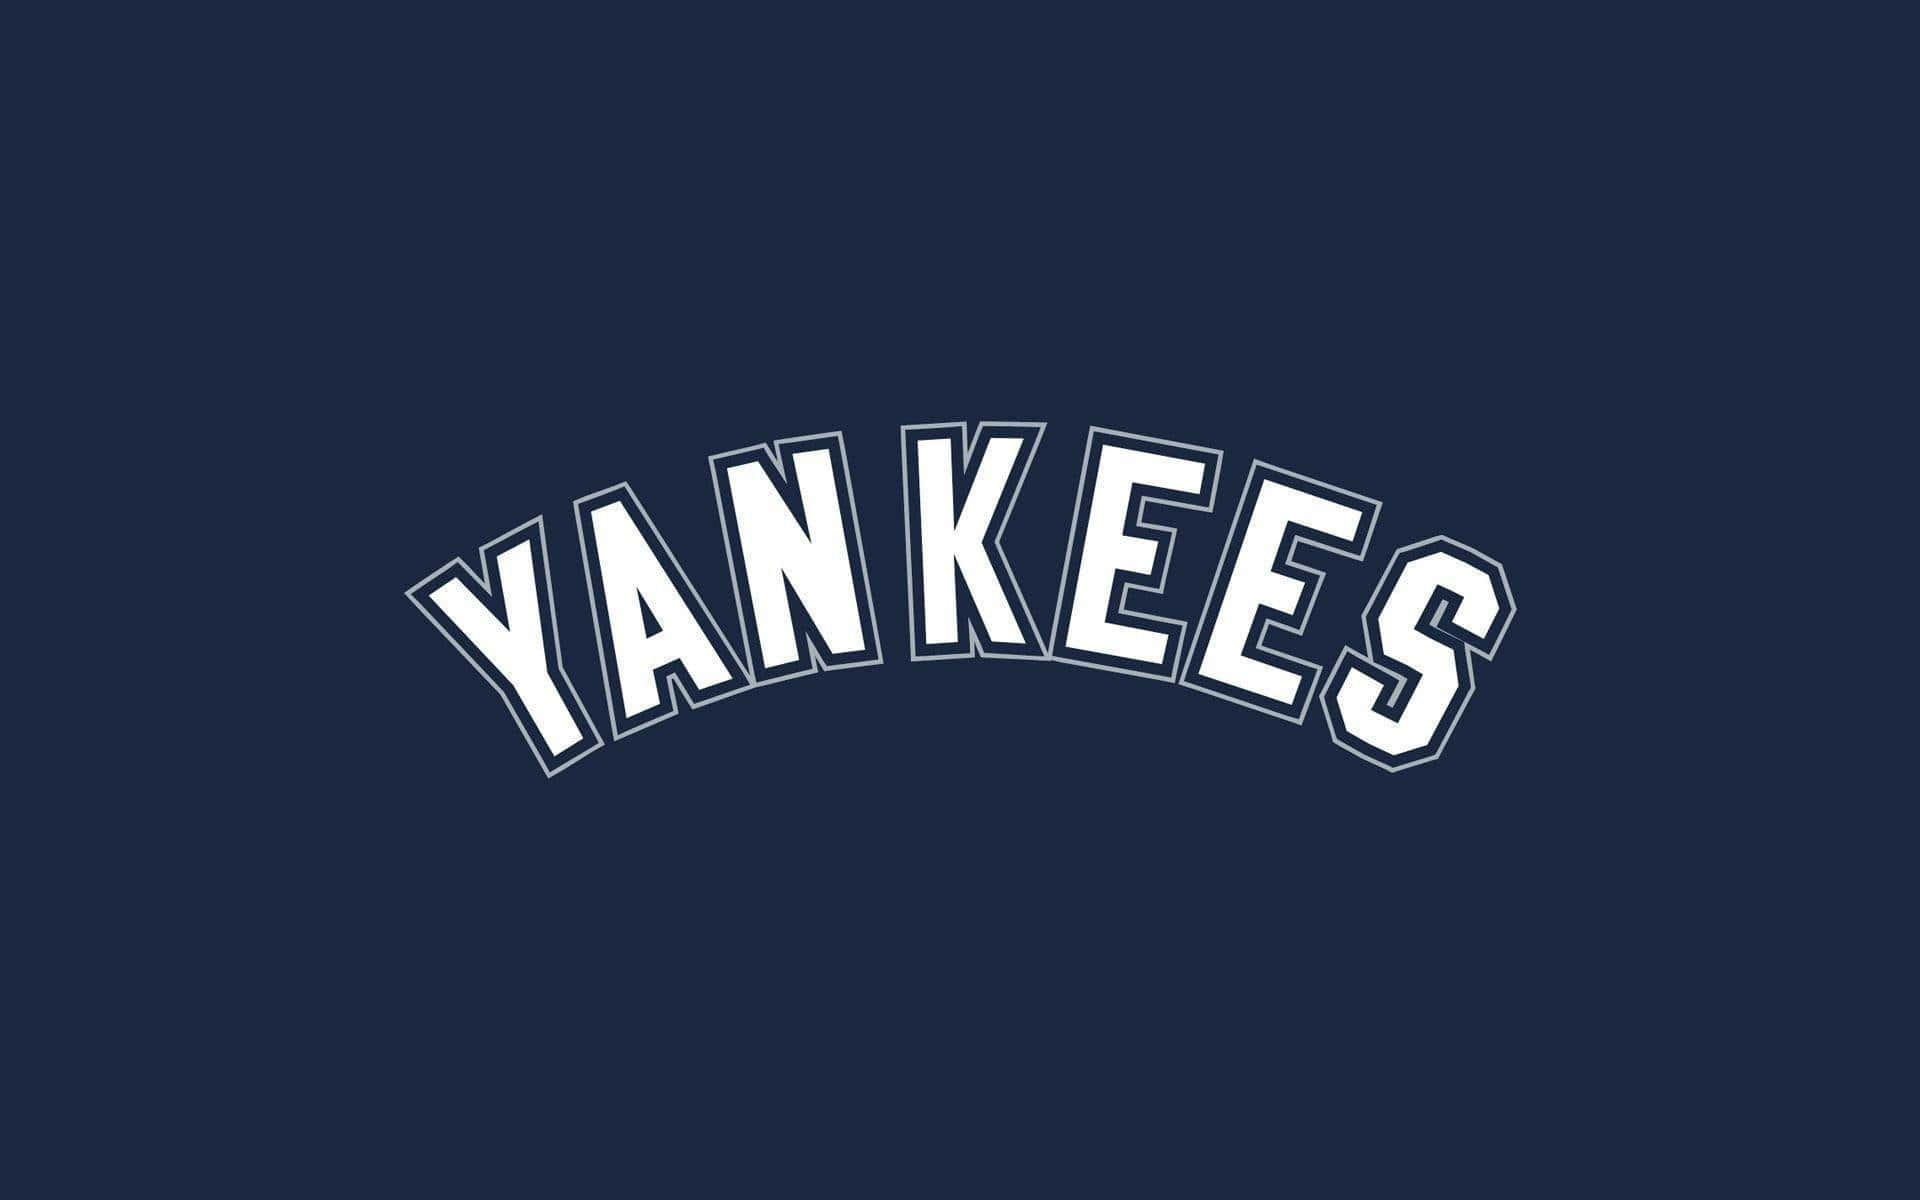 Iconicologo Dei New York Yankees Su Uno Sfondo Classico A Righe Verticali Pinstripe